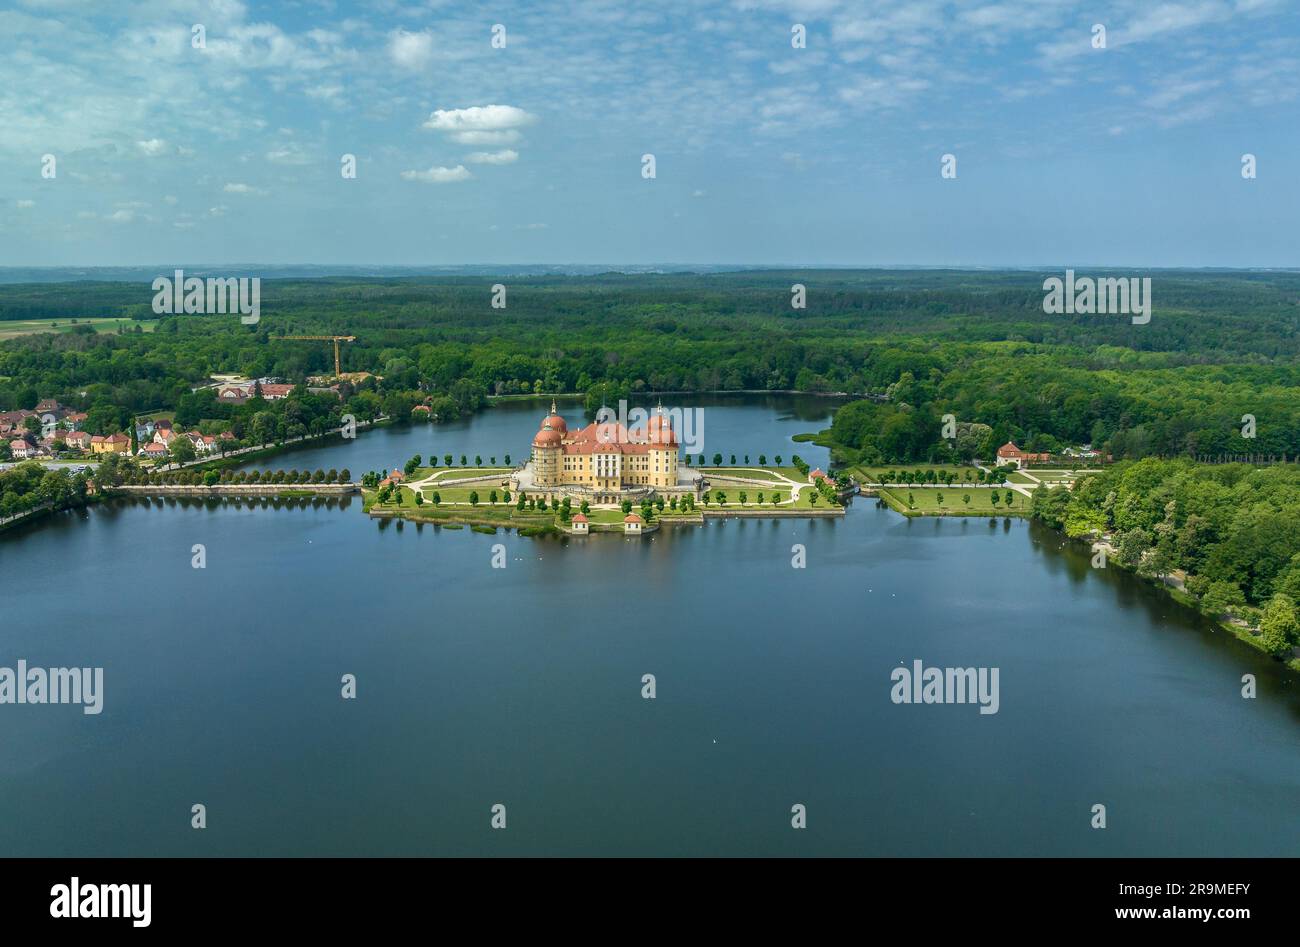 Blick aus der Vogelperspektive auf Schloss Moritzburg ein barocker Palast mit vier runden Türmen auf einer symmetrischen künstlichen Insel Stockfoto